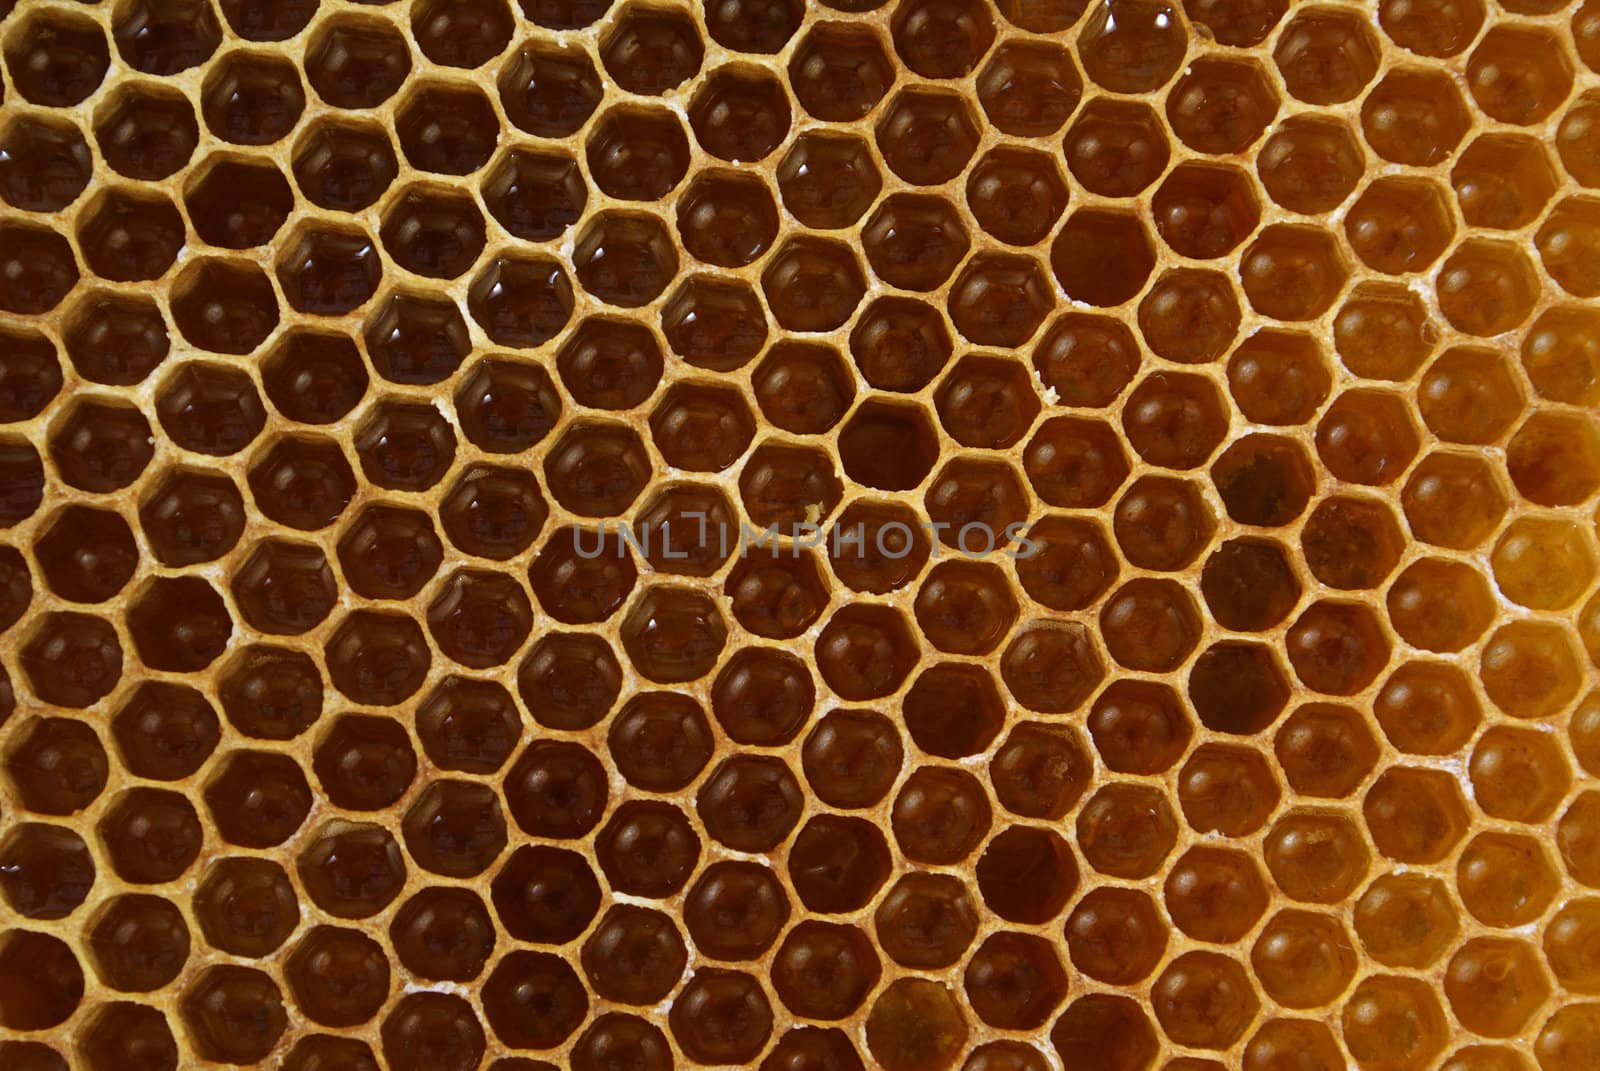 bee's slice full of honey as background